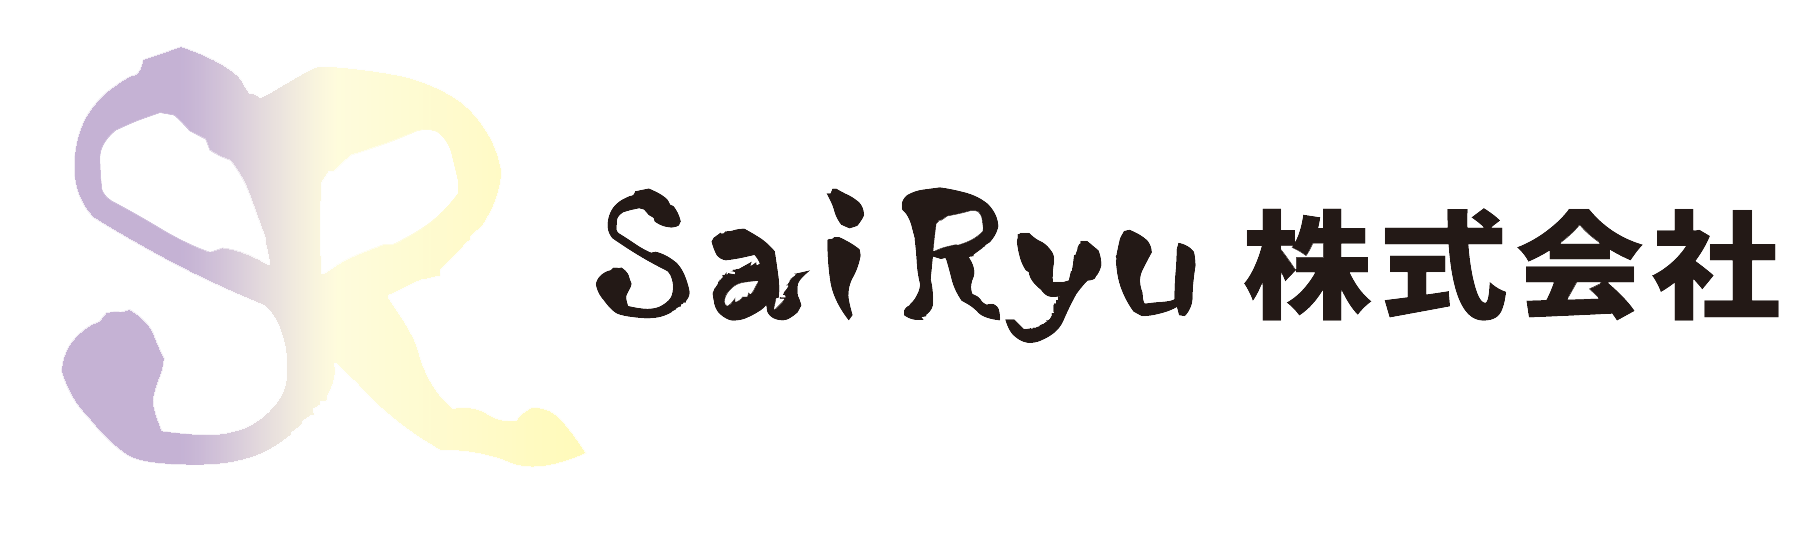 Sai Ryu株式会社